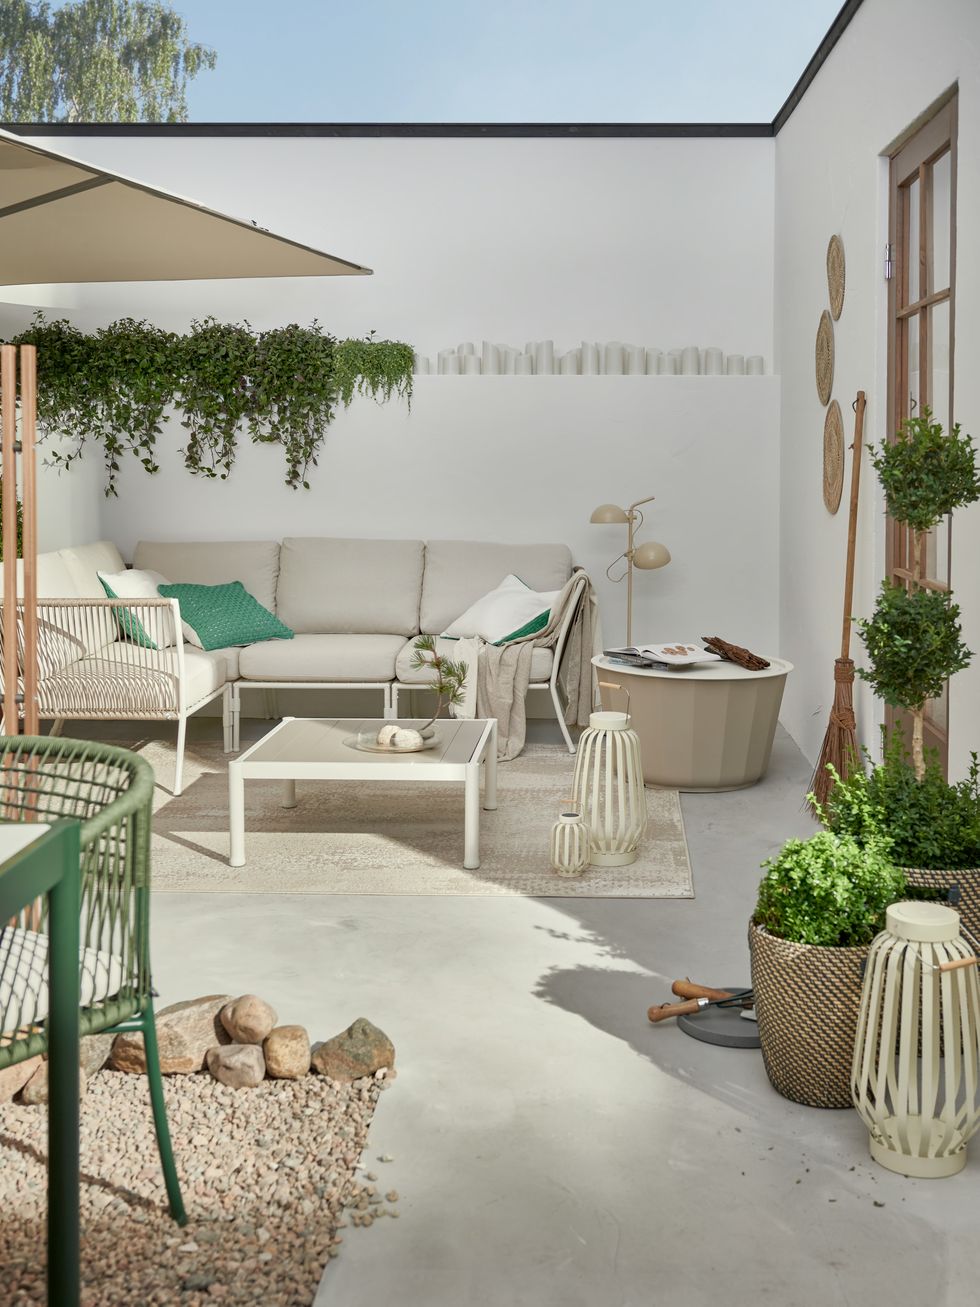 IKEA terrace furniture ideas patio decoration